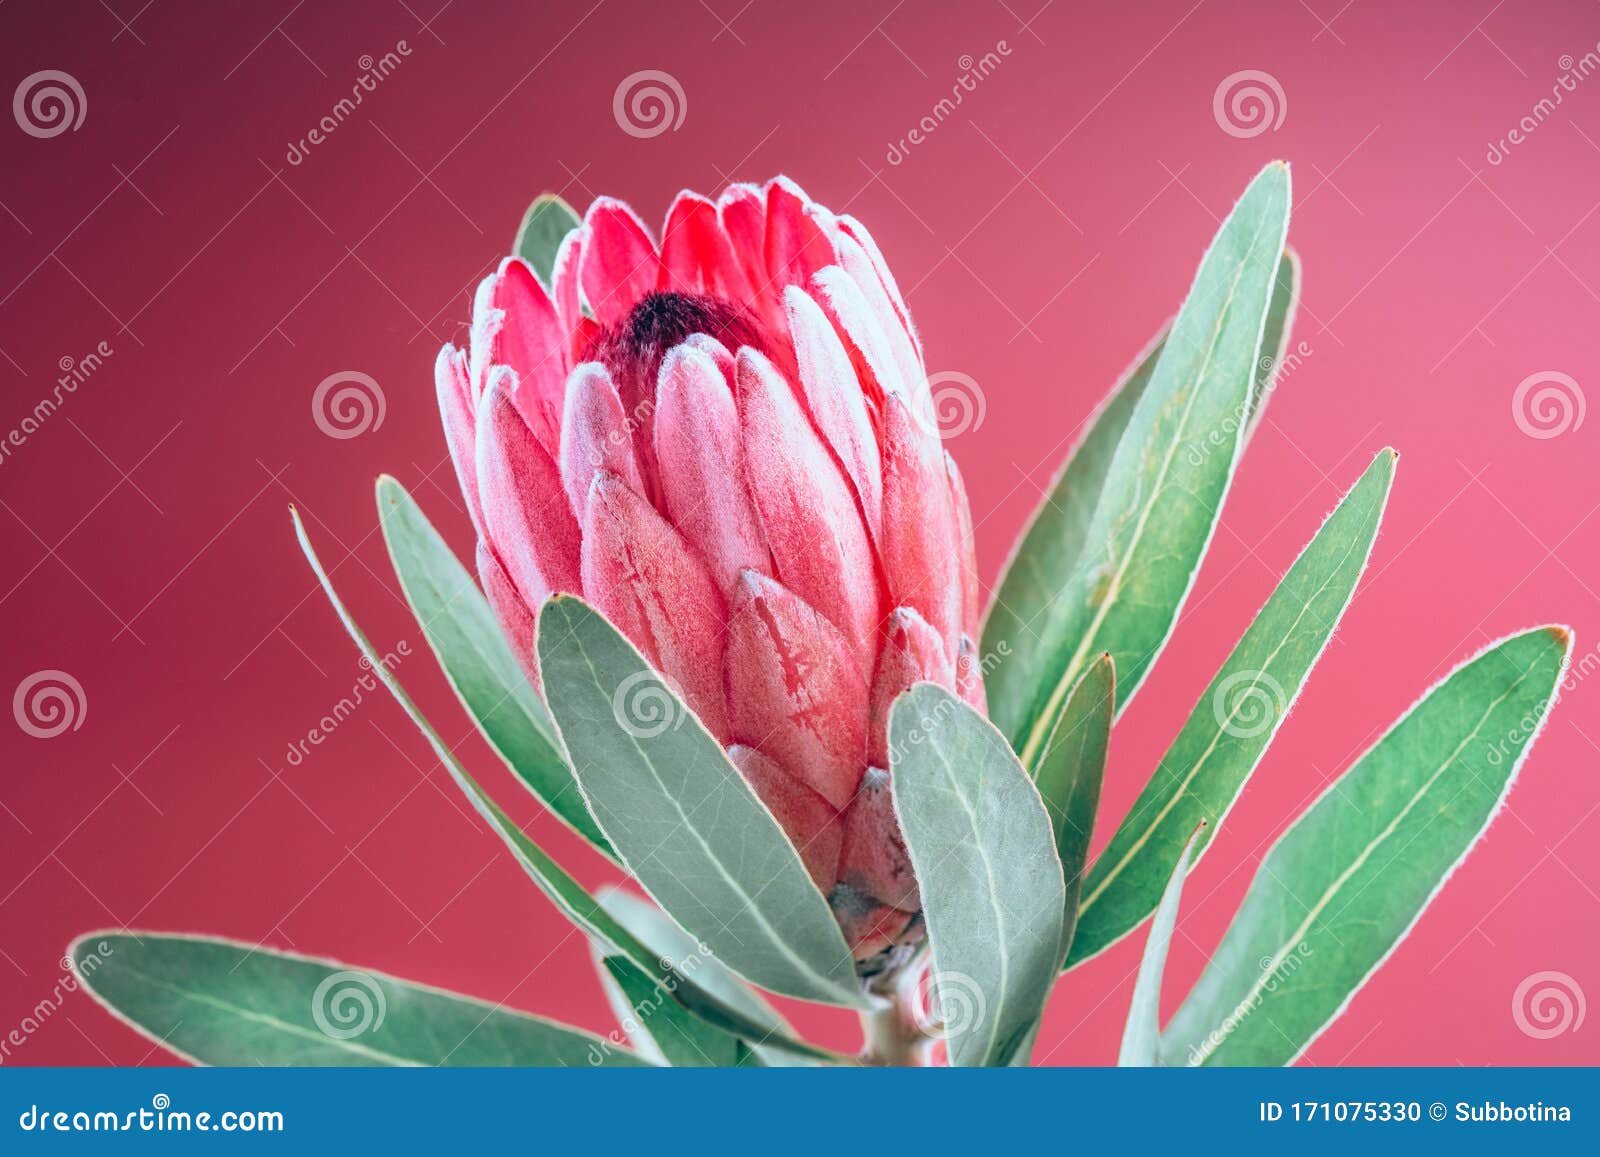 proteablumenbündel blühender rosa könig protea plant über rosa